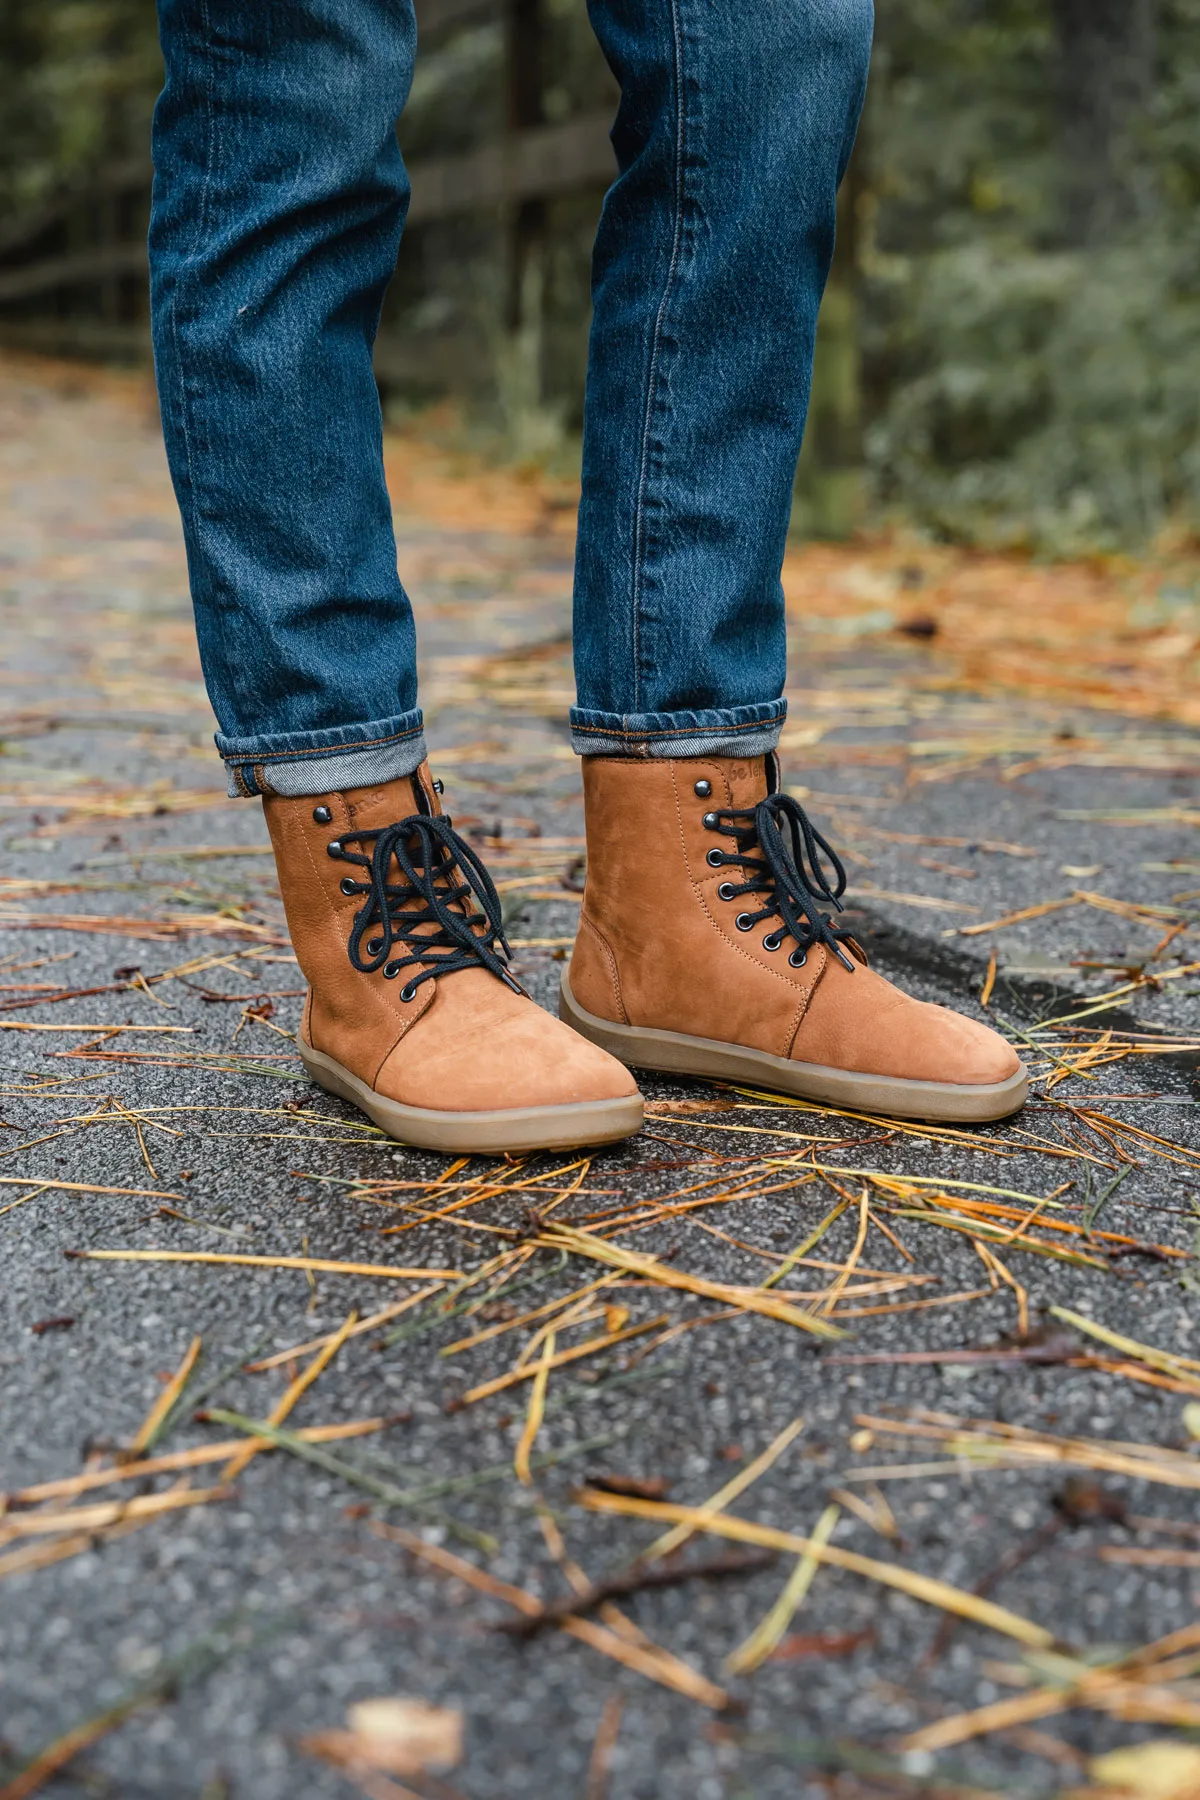 Best Barefoot Winter Boots Waterproof, Warm, and Zero Drop